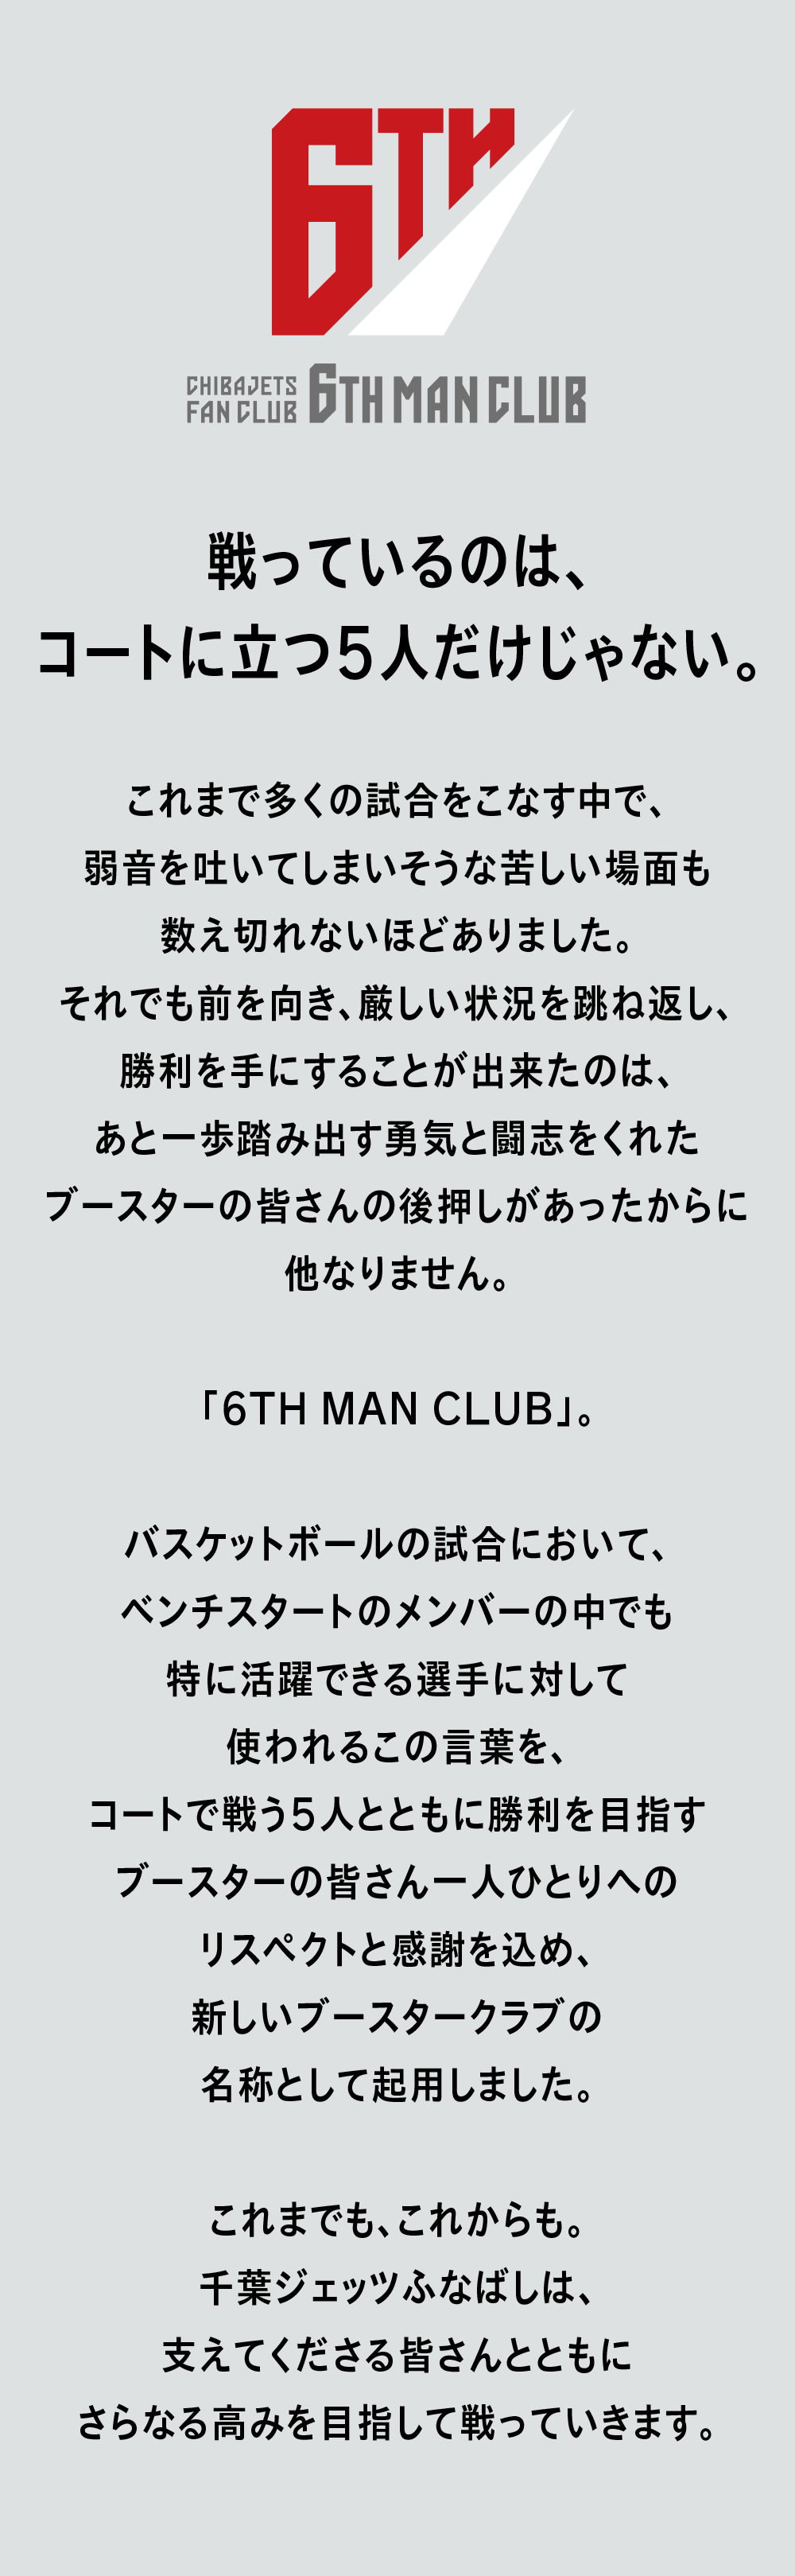 2021-22シーズン 6TH MAN CLUB概要 | 千葉ジェッツ